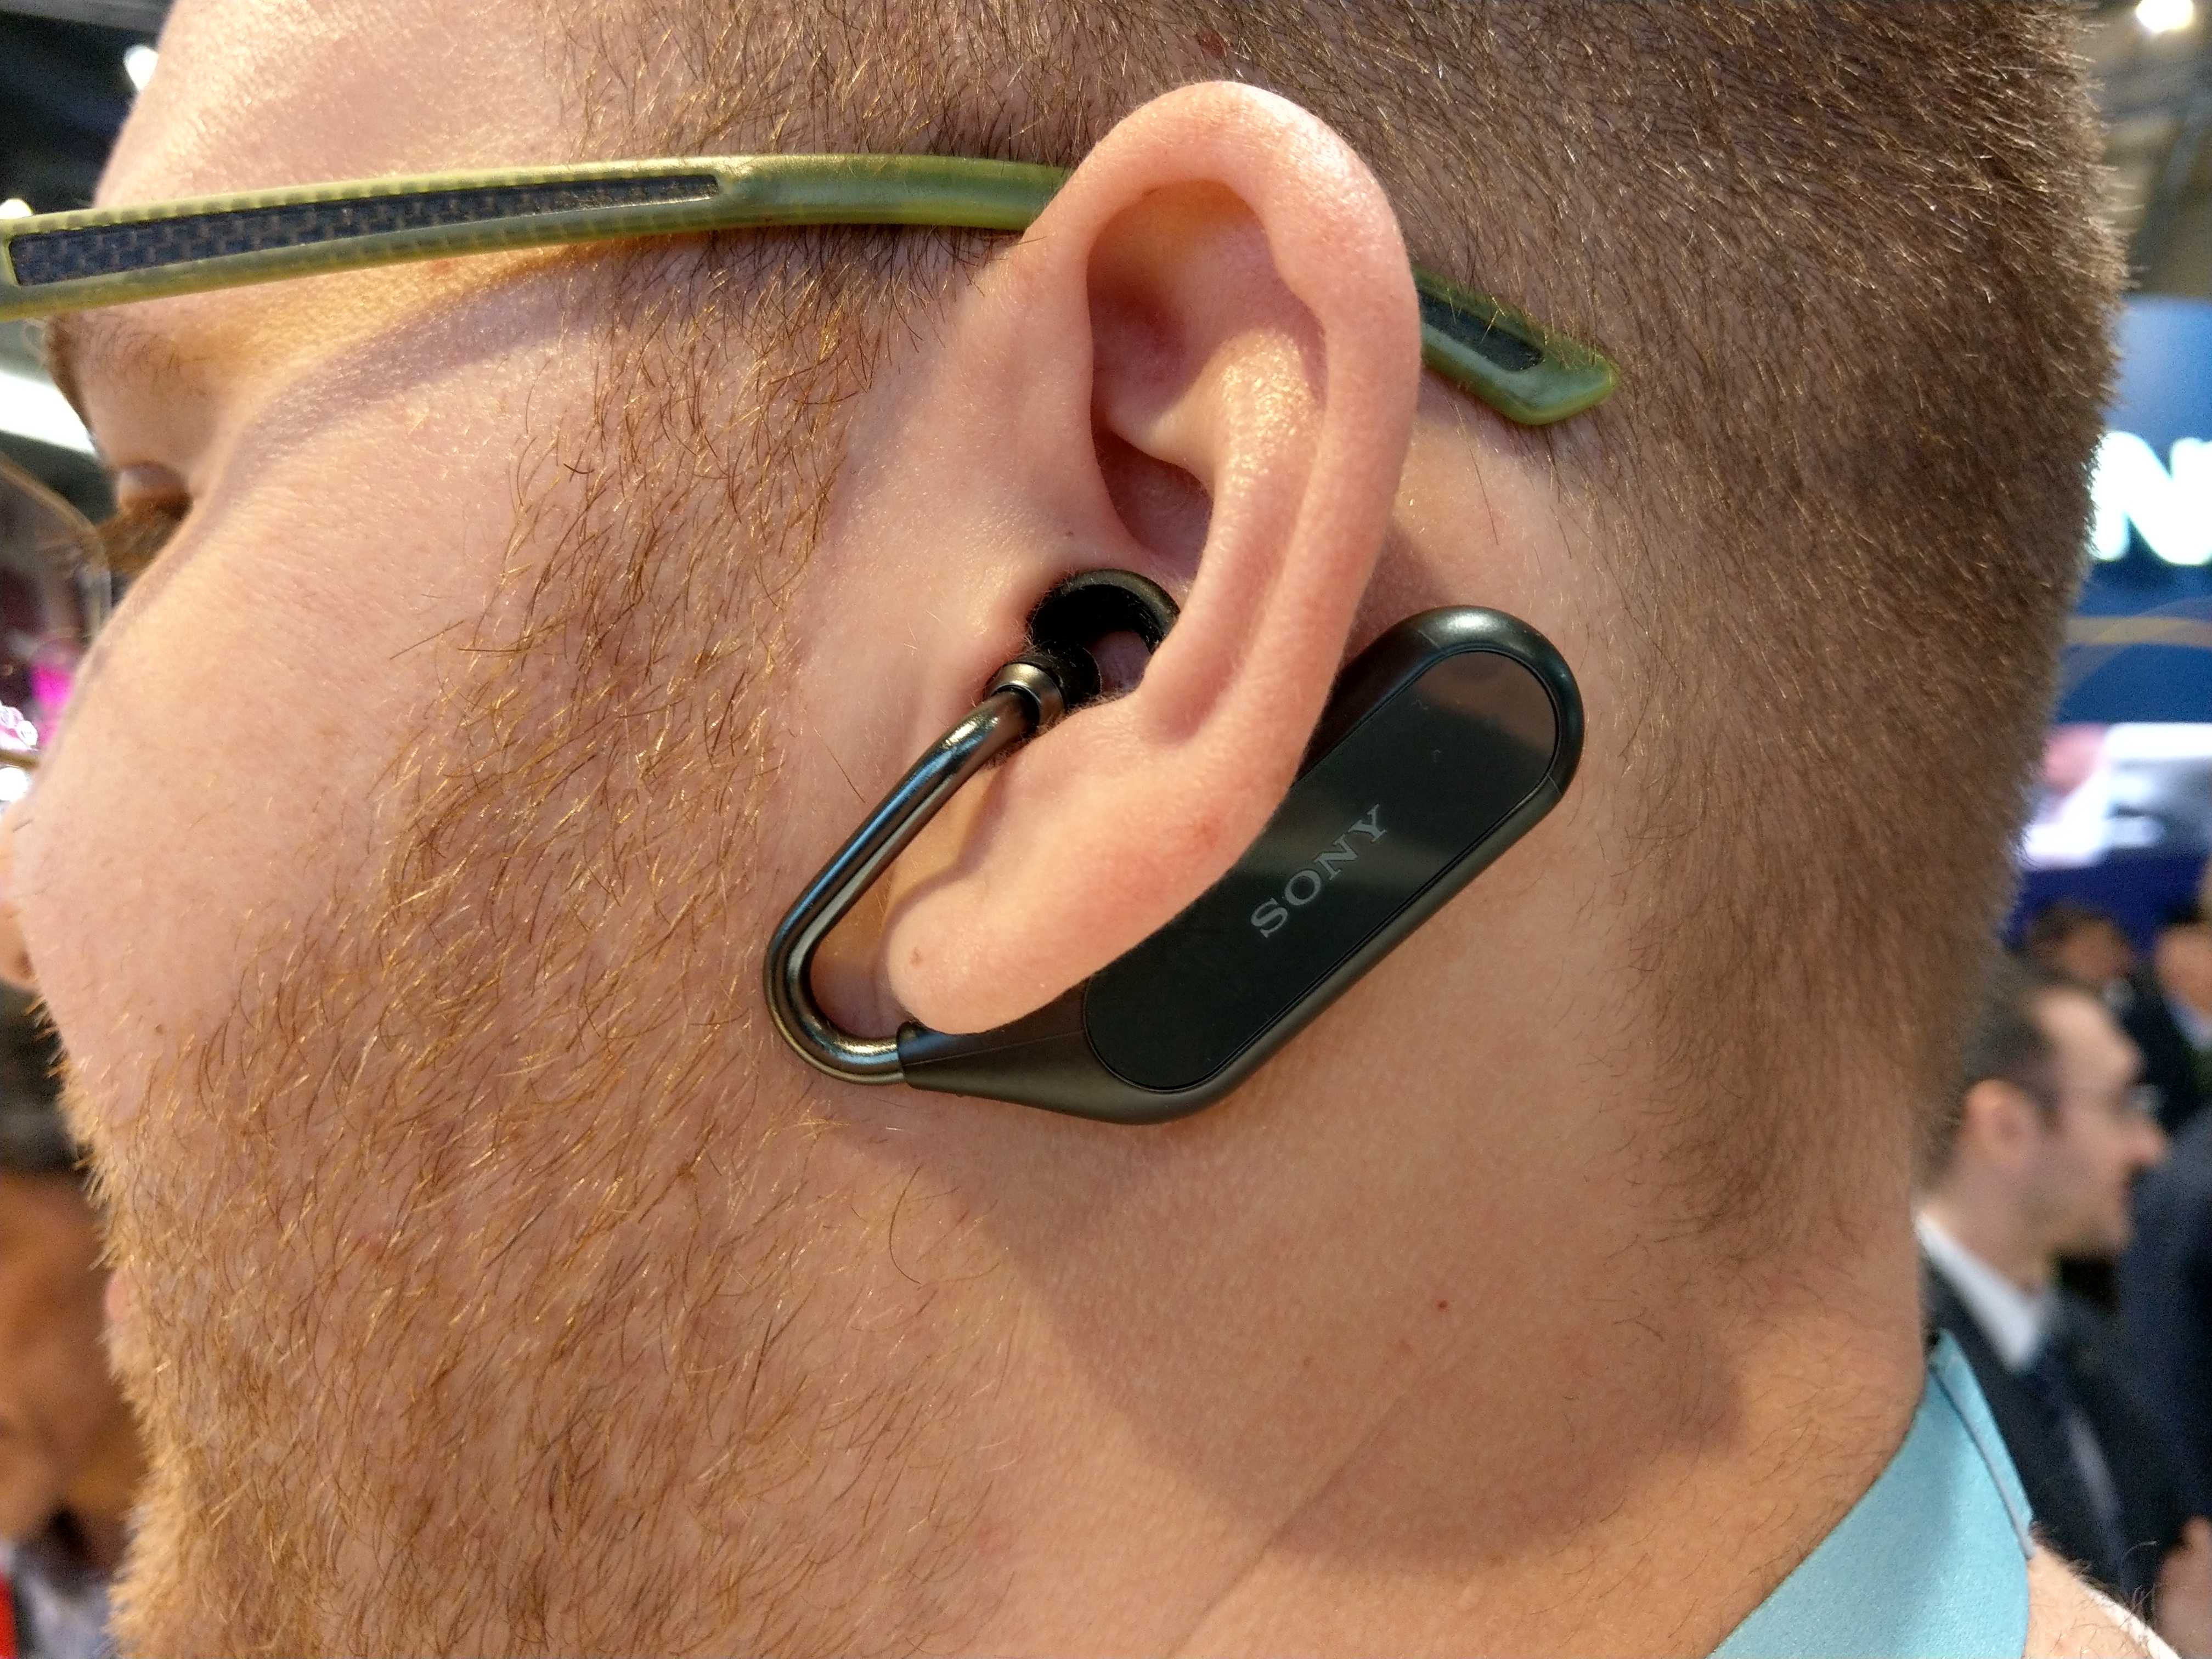 Sony представила xperia ear duo в москве - androidinsider.ru